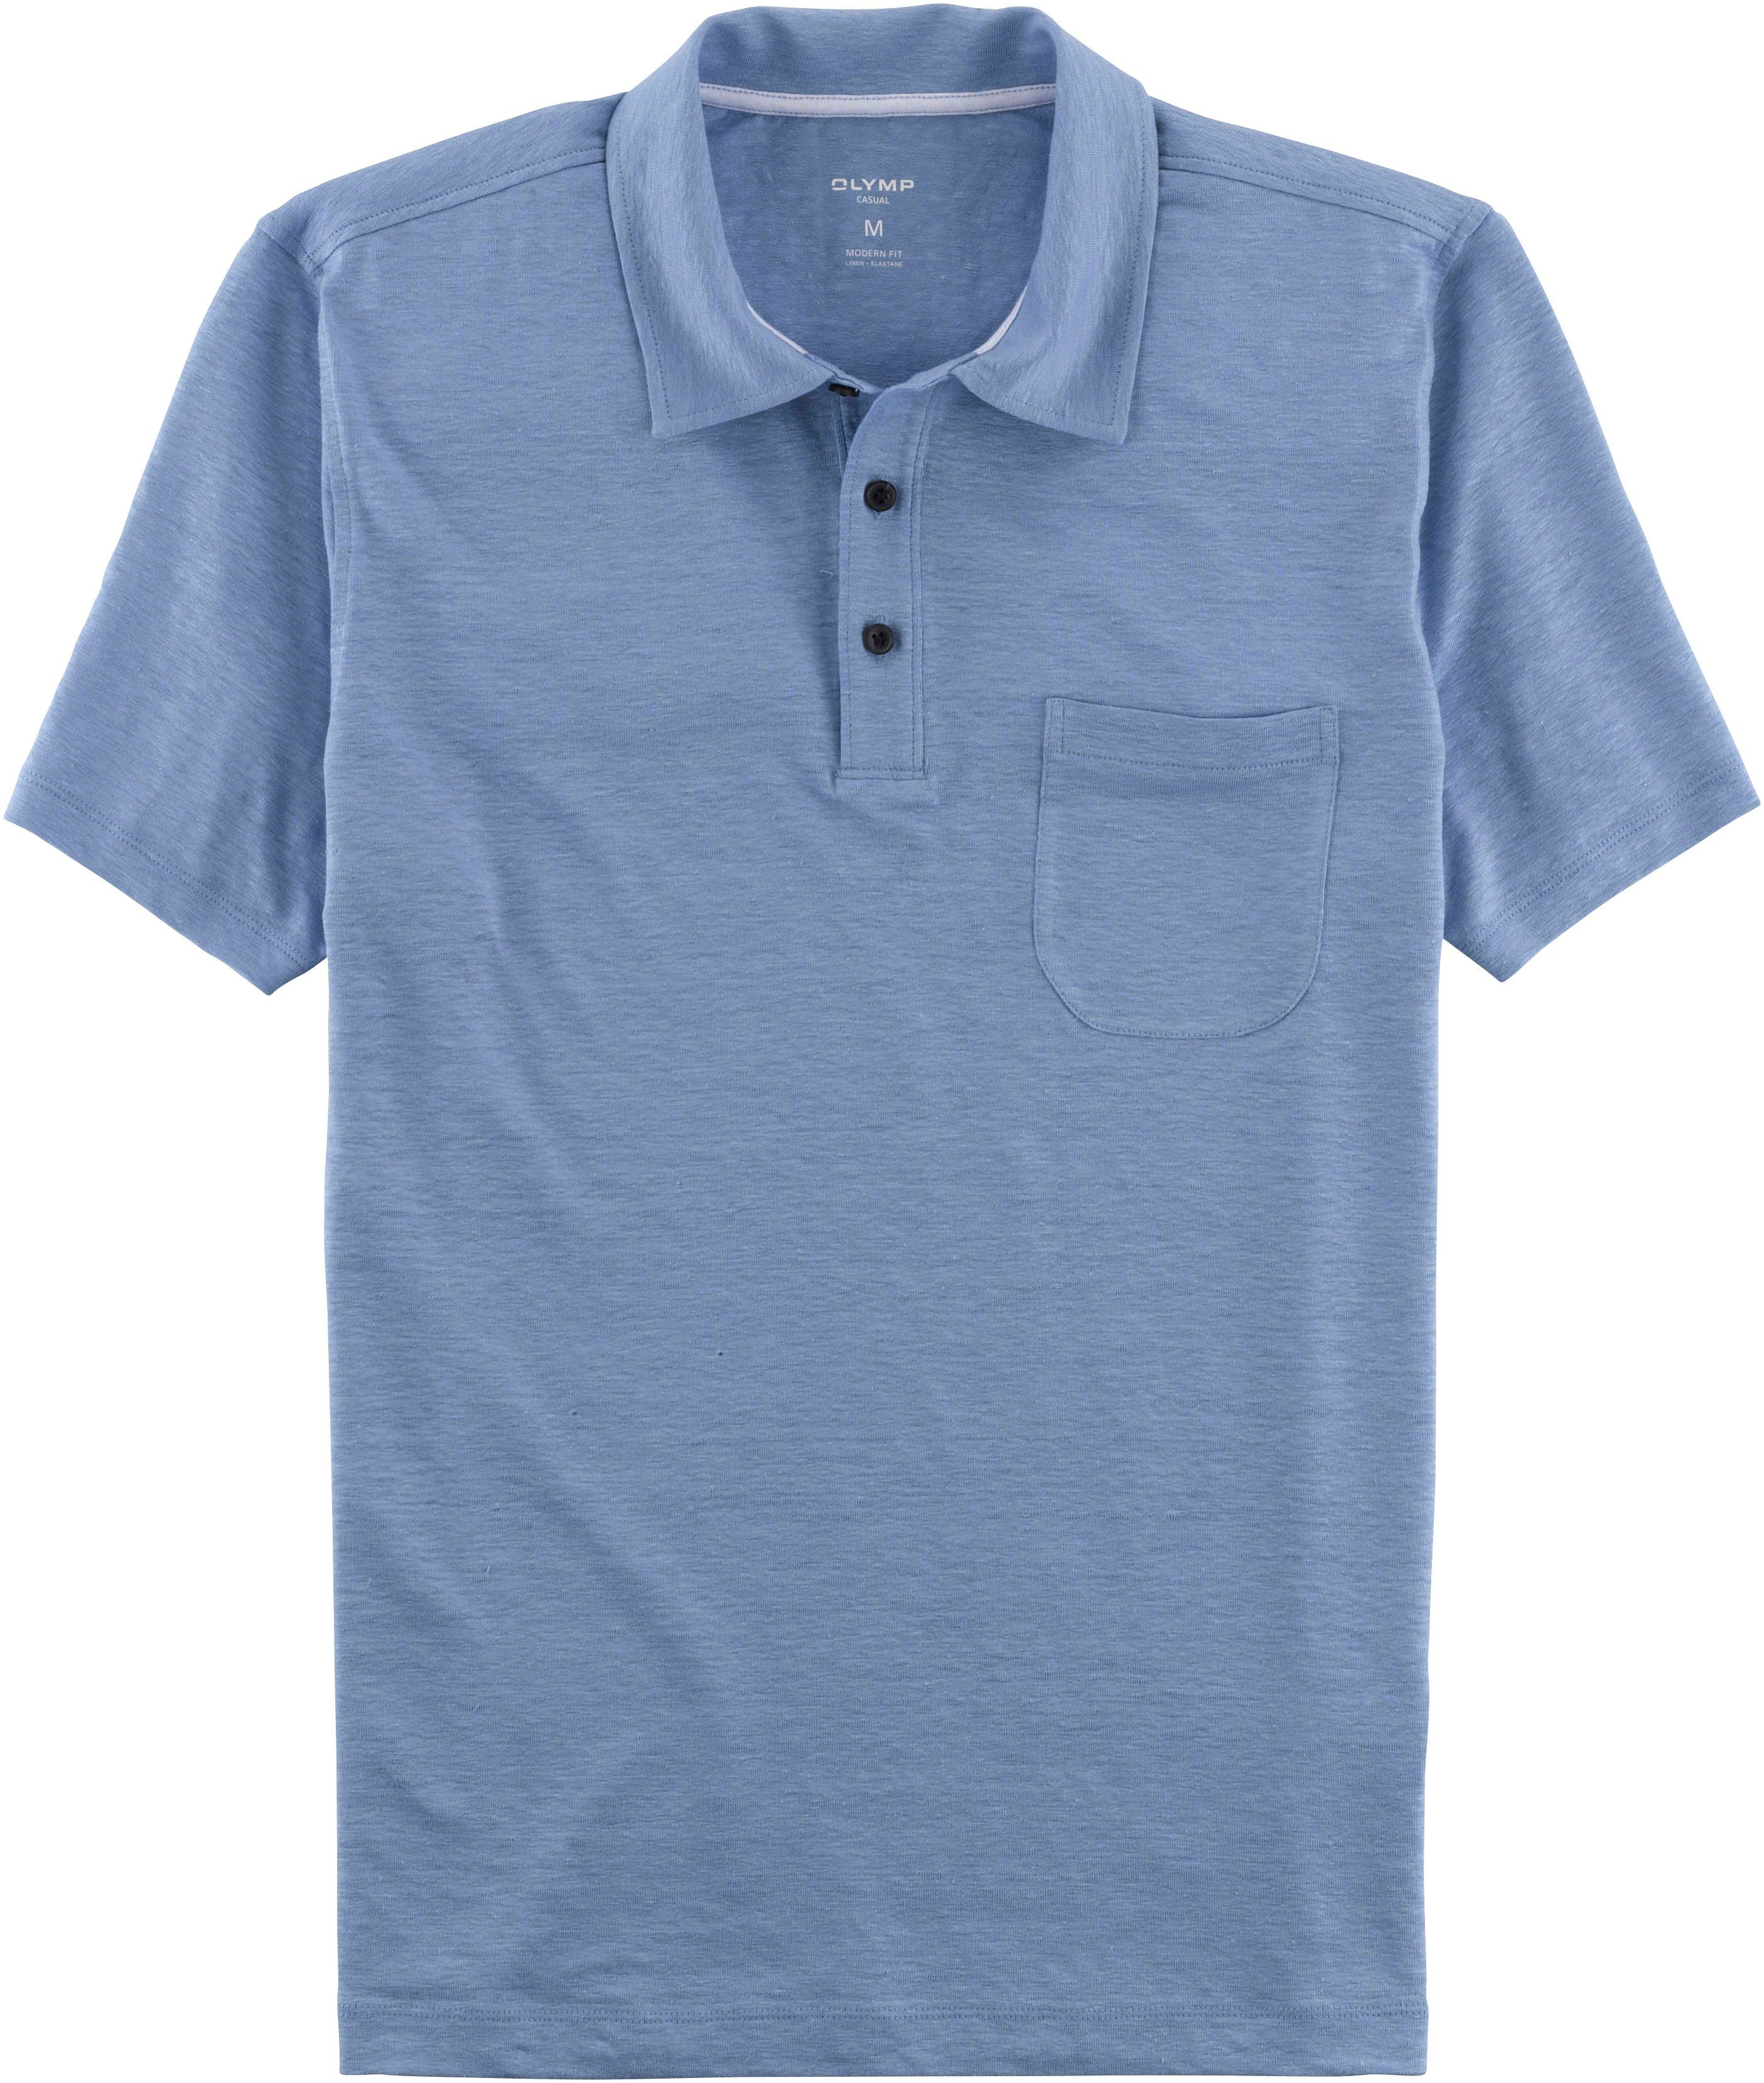 OLYMP Poloshirt im Hemden-Look mit Leinen in sommerlicher Casual-Optik ozon